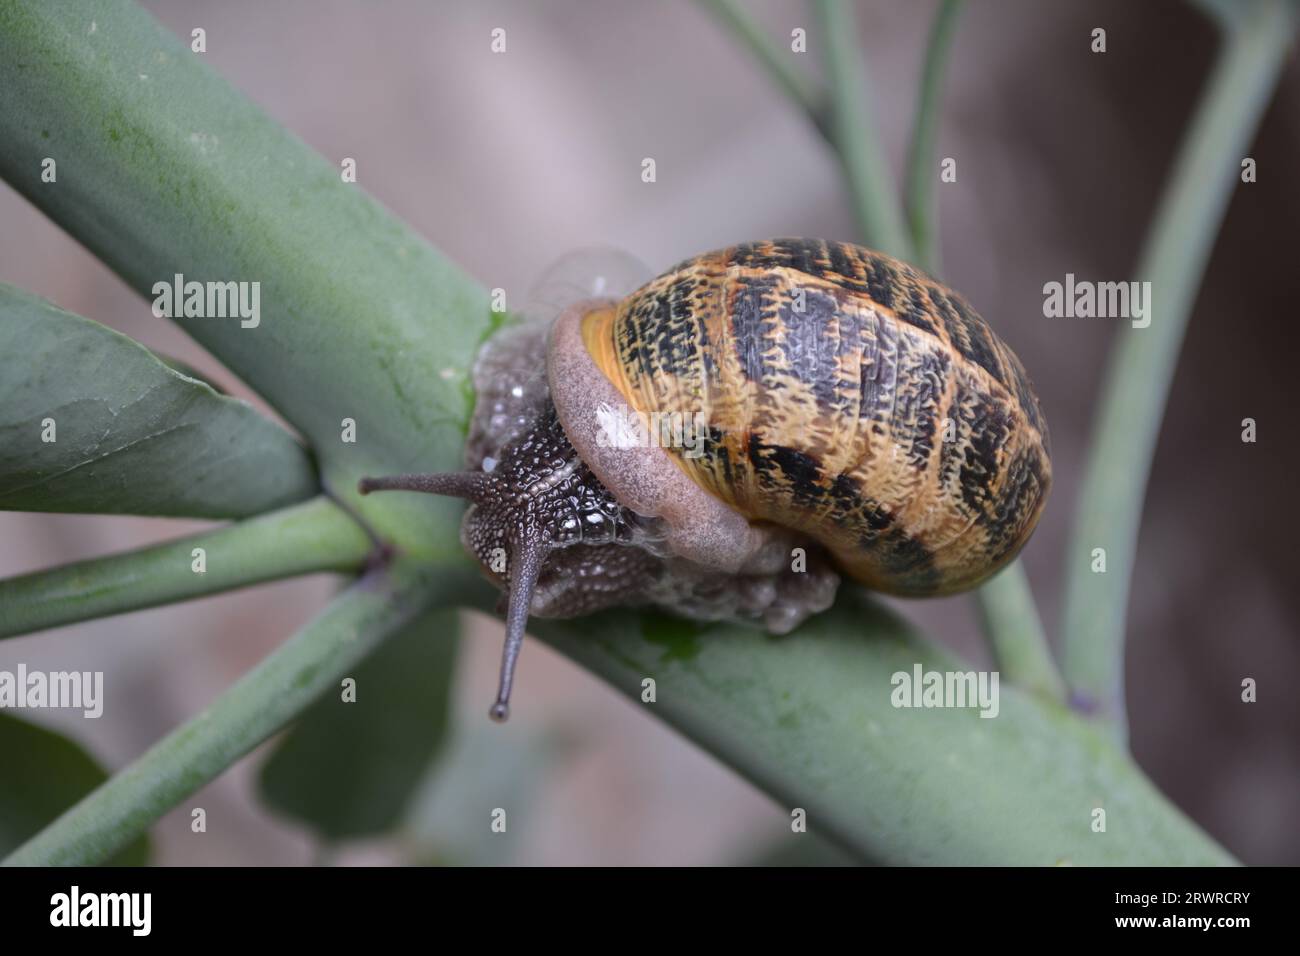 Snail on a Branch, Helix Aspersa on a Brach, Hidden Snail on a Branch, Helix Aspersa Muller, Helix Aspersa Müller, Garden Snail, Land Snail, Shell Stock Photo